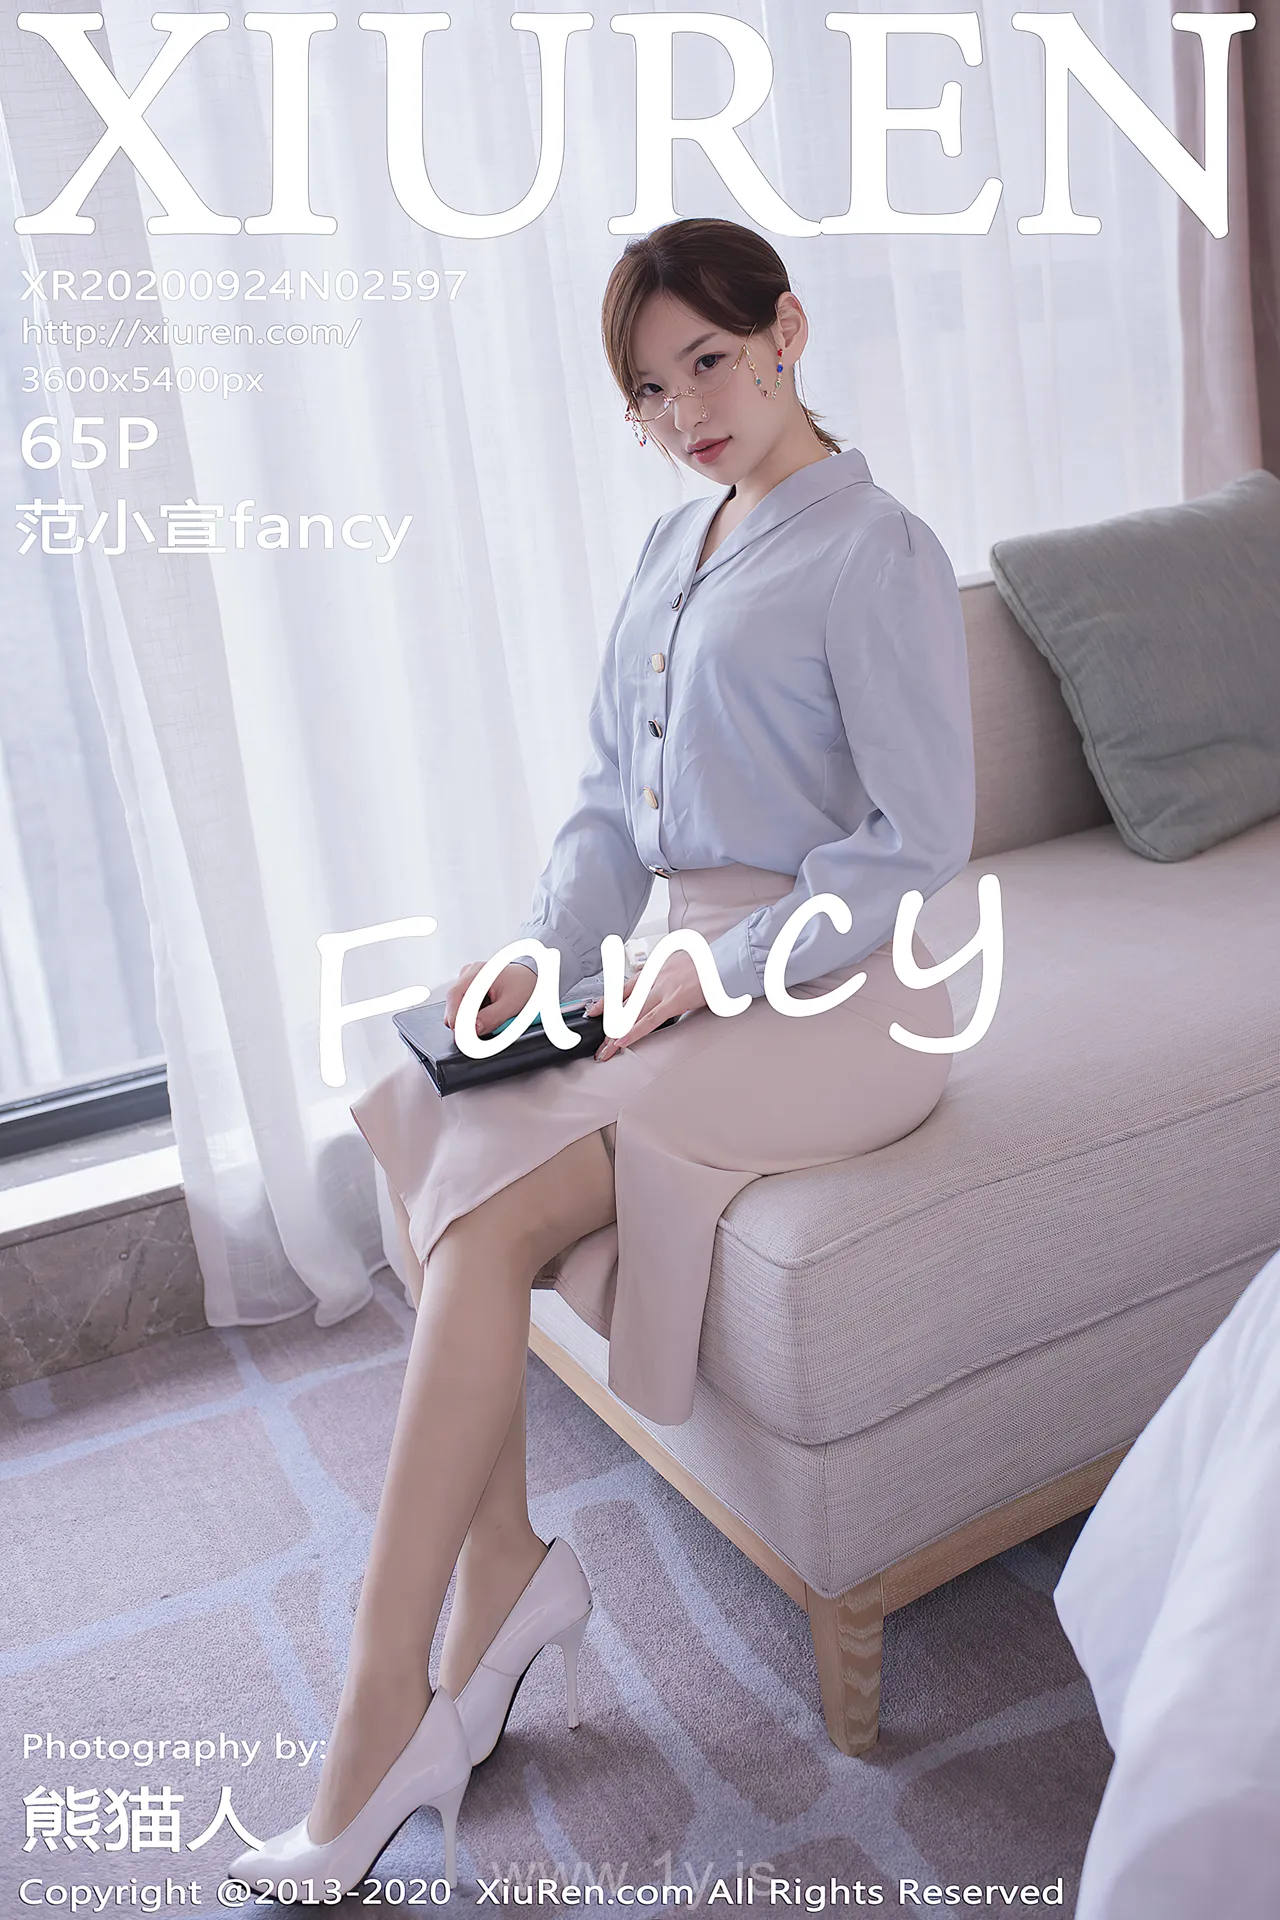 XIUREN(秀人网) NO.2597 Decent & Appealing Asian Chick 范小宣FANCY